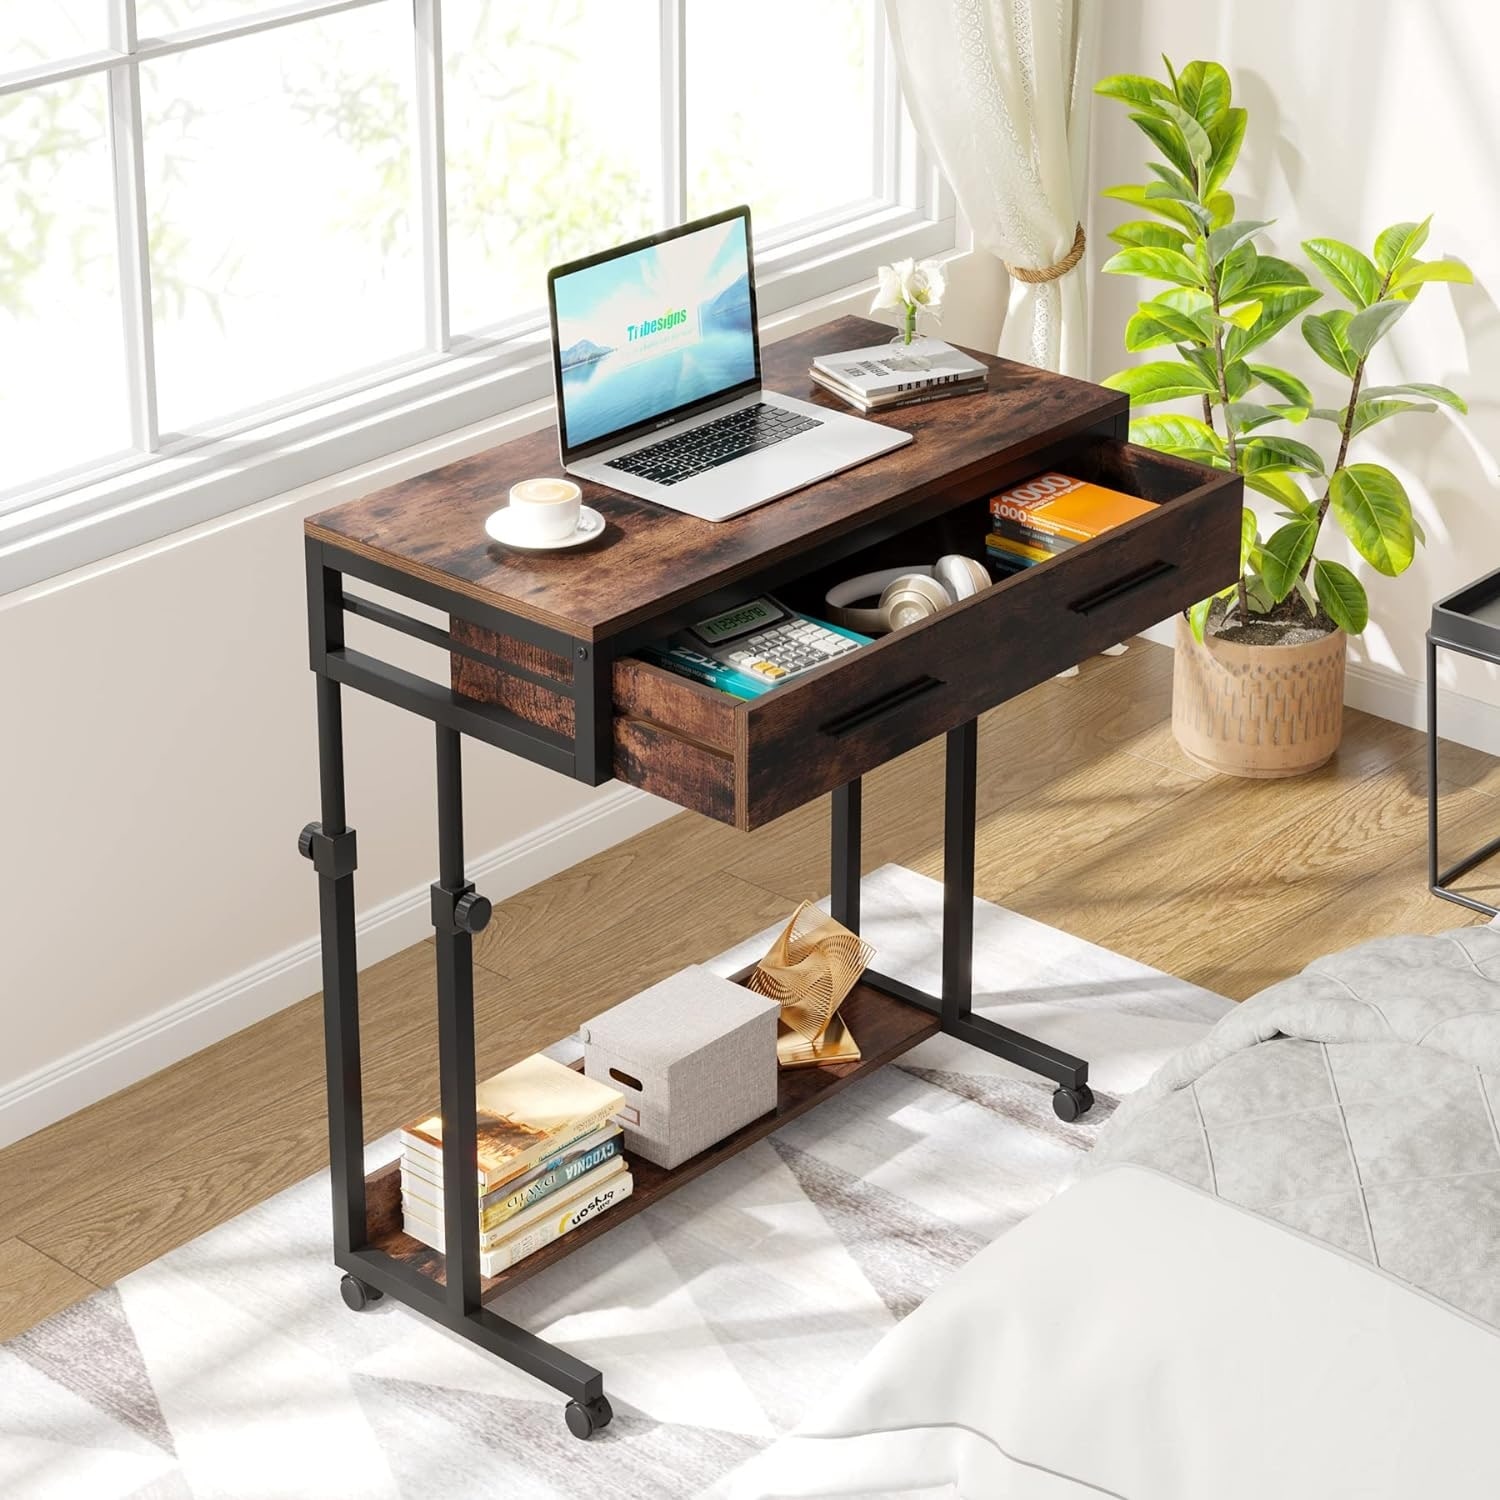 Fuwobriva Adjustable Mobile Laptop Desk Home Office Desk Detachable Wheels  Desk Portable Height Mobile Bedside Table Veranda Office Desk Additional